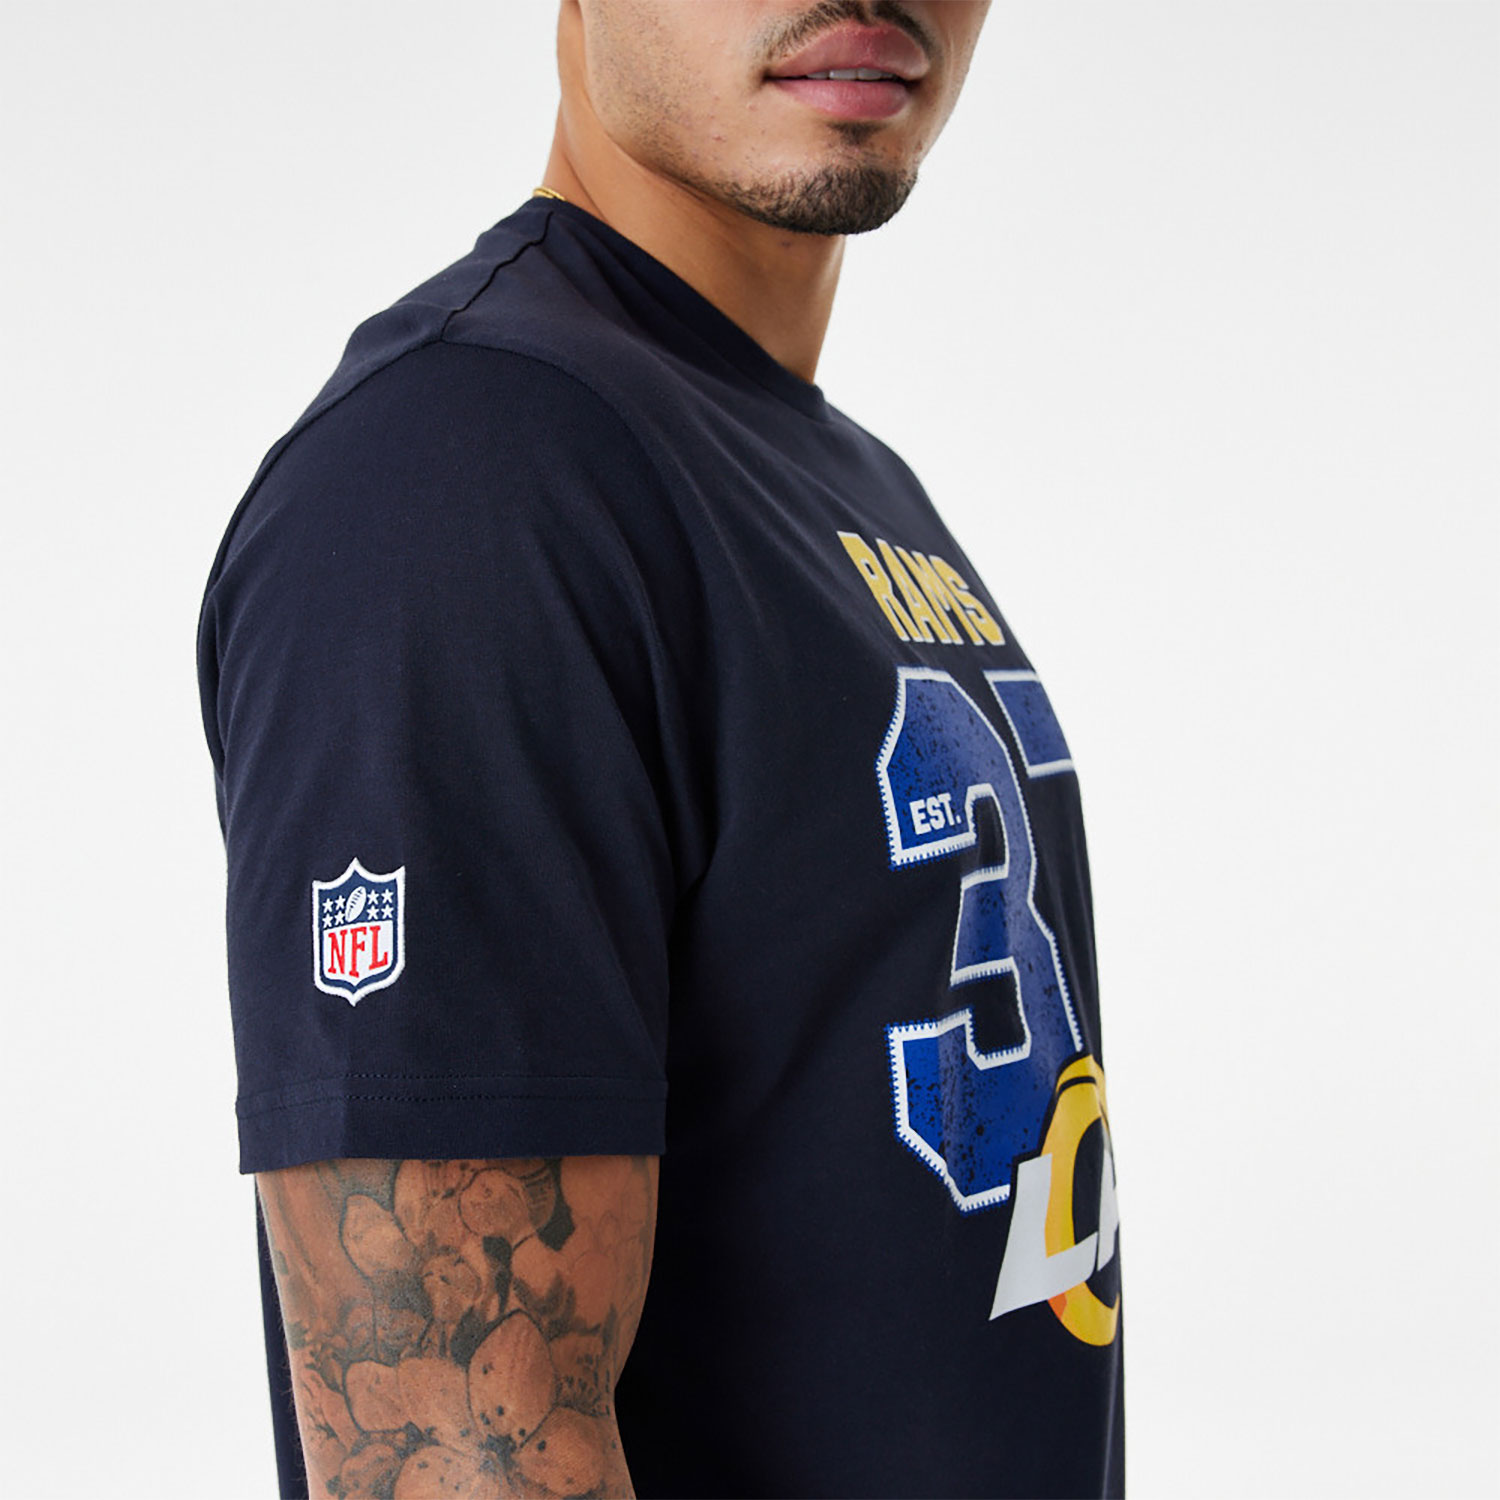 LA Rams NFL Wordmark Navy T-Shirt